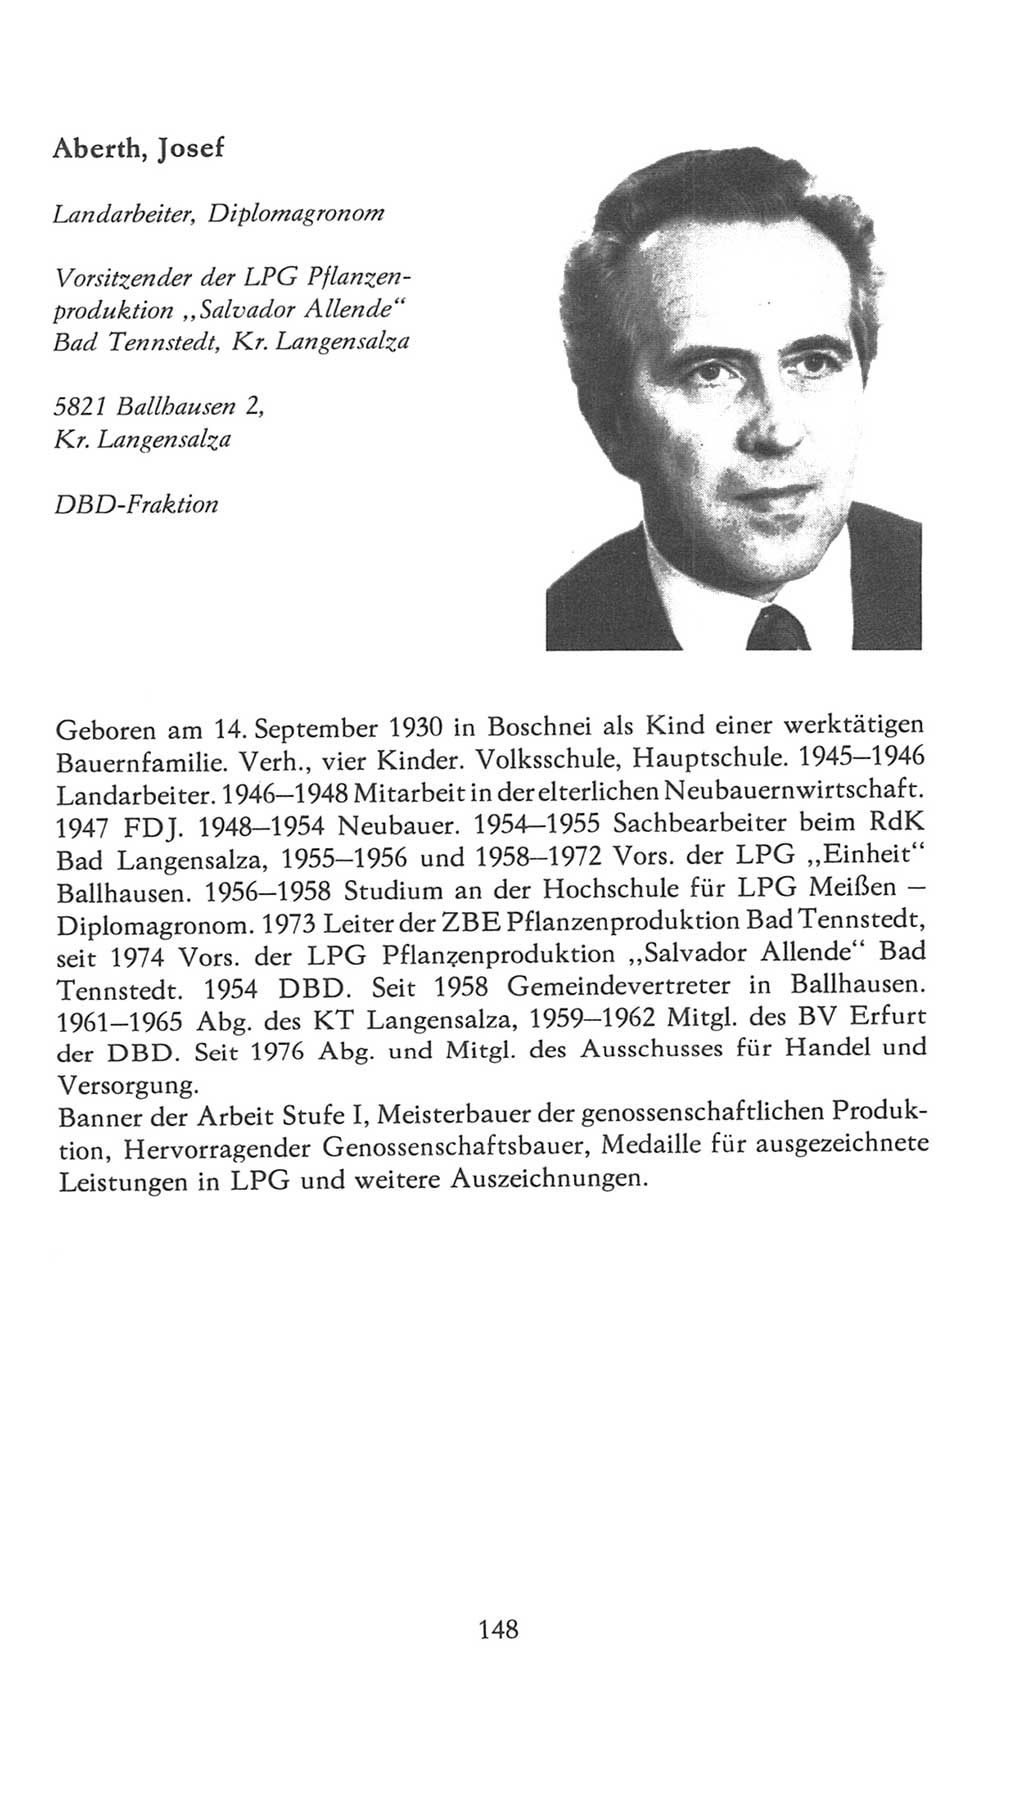 Volkskammer (VK) der Deutschen Demokratischen Republik (DDR), 7. Wahlperiode 1976-1981, Seite 148 (VK. DDR 7. WP. 1976-1981, S. 148)